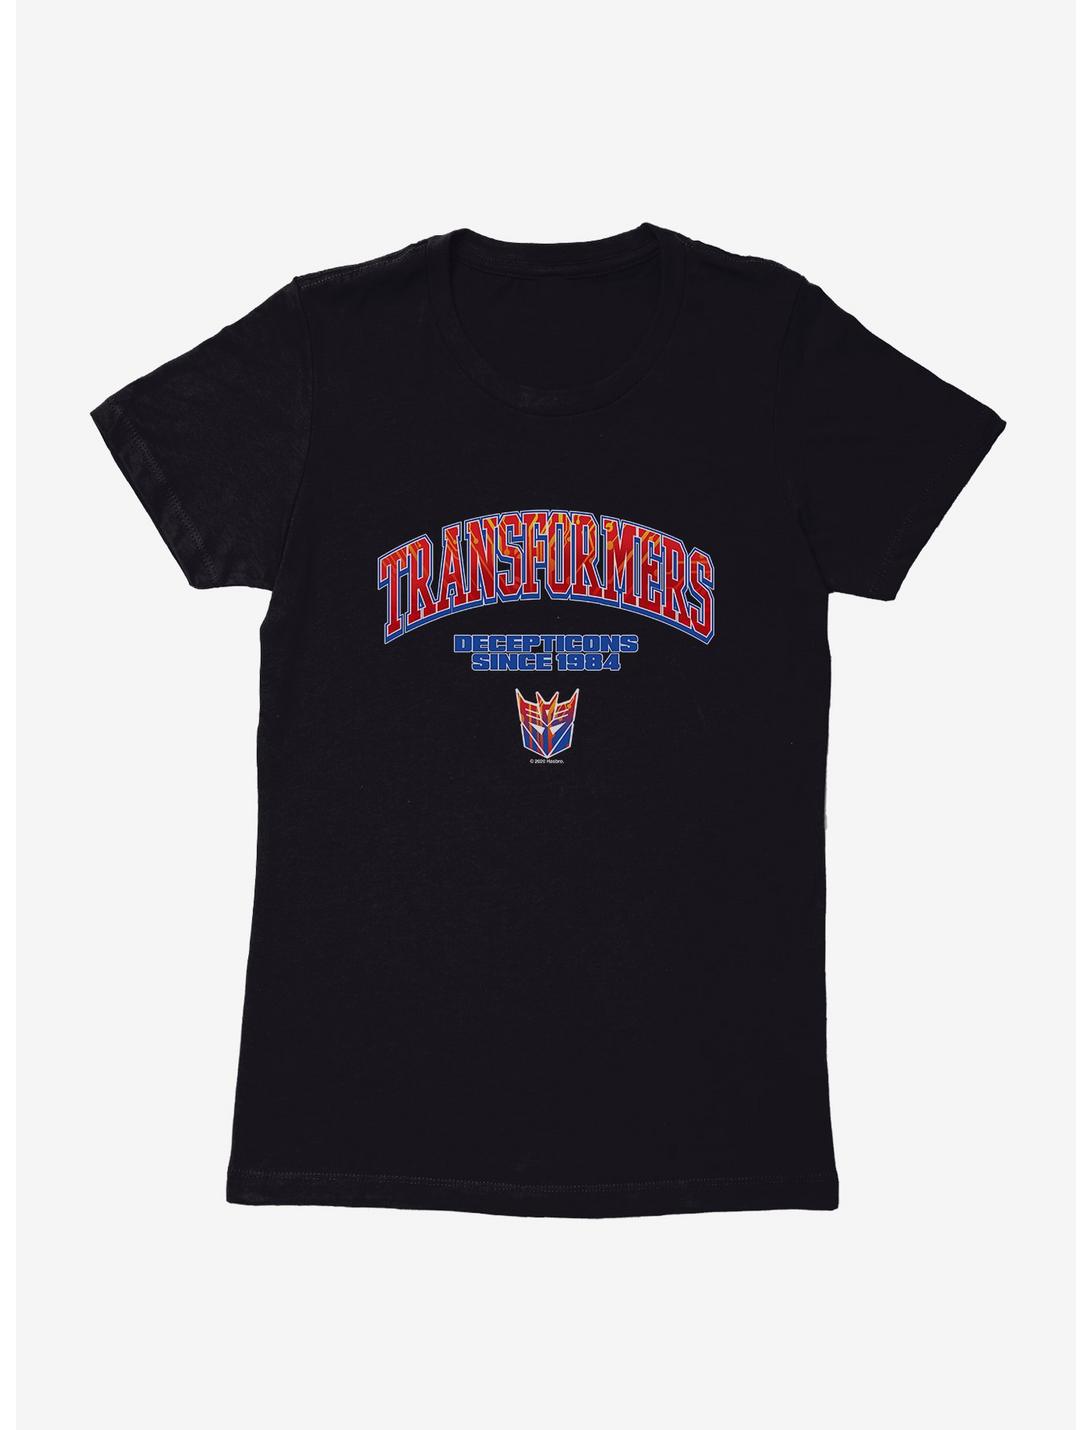 Transformers Go Decepticons Womens T-Shirt, BLACK, hi-res